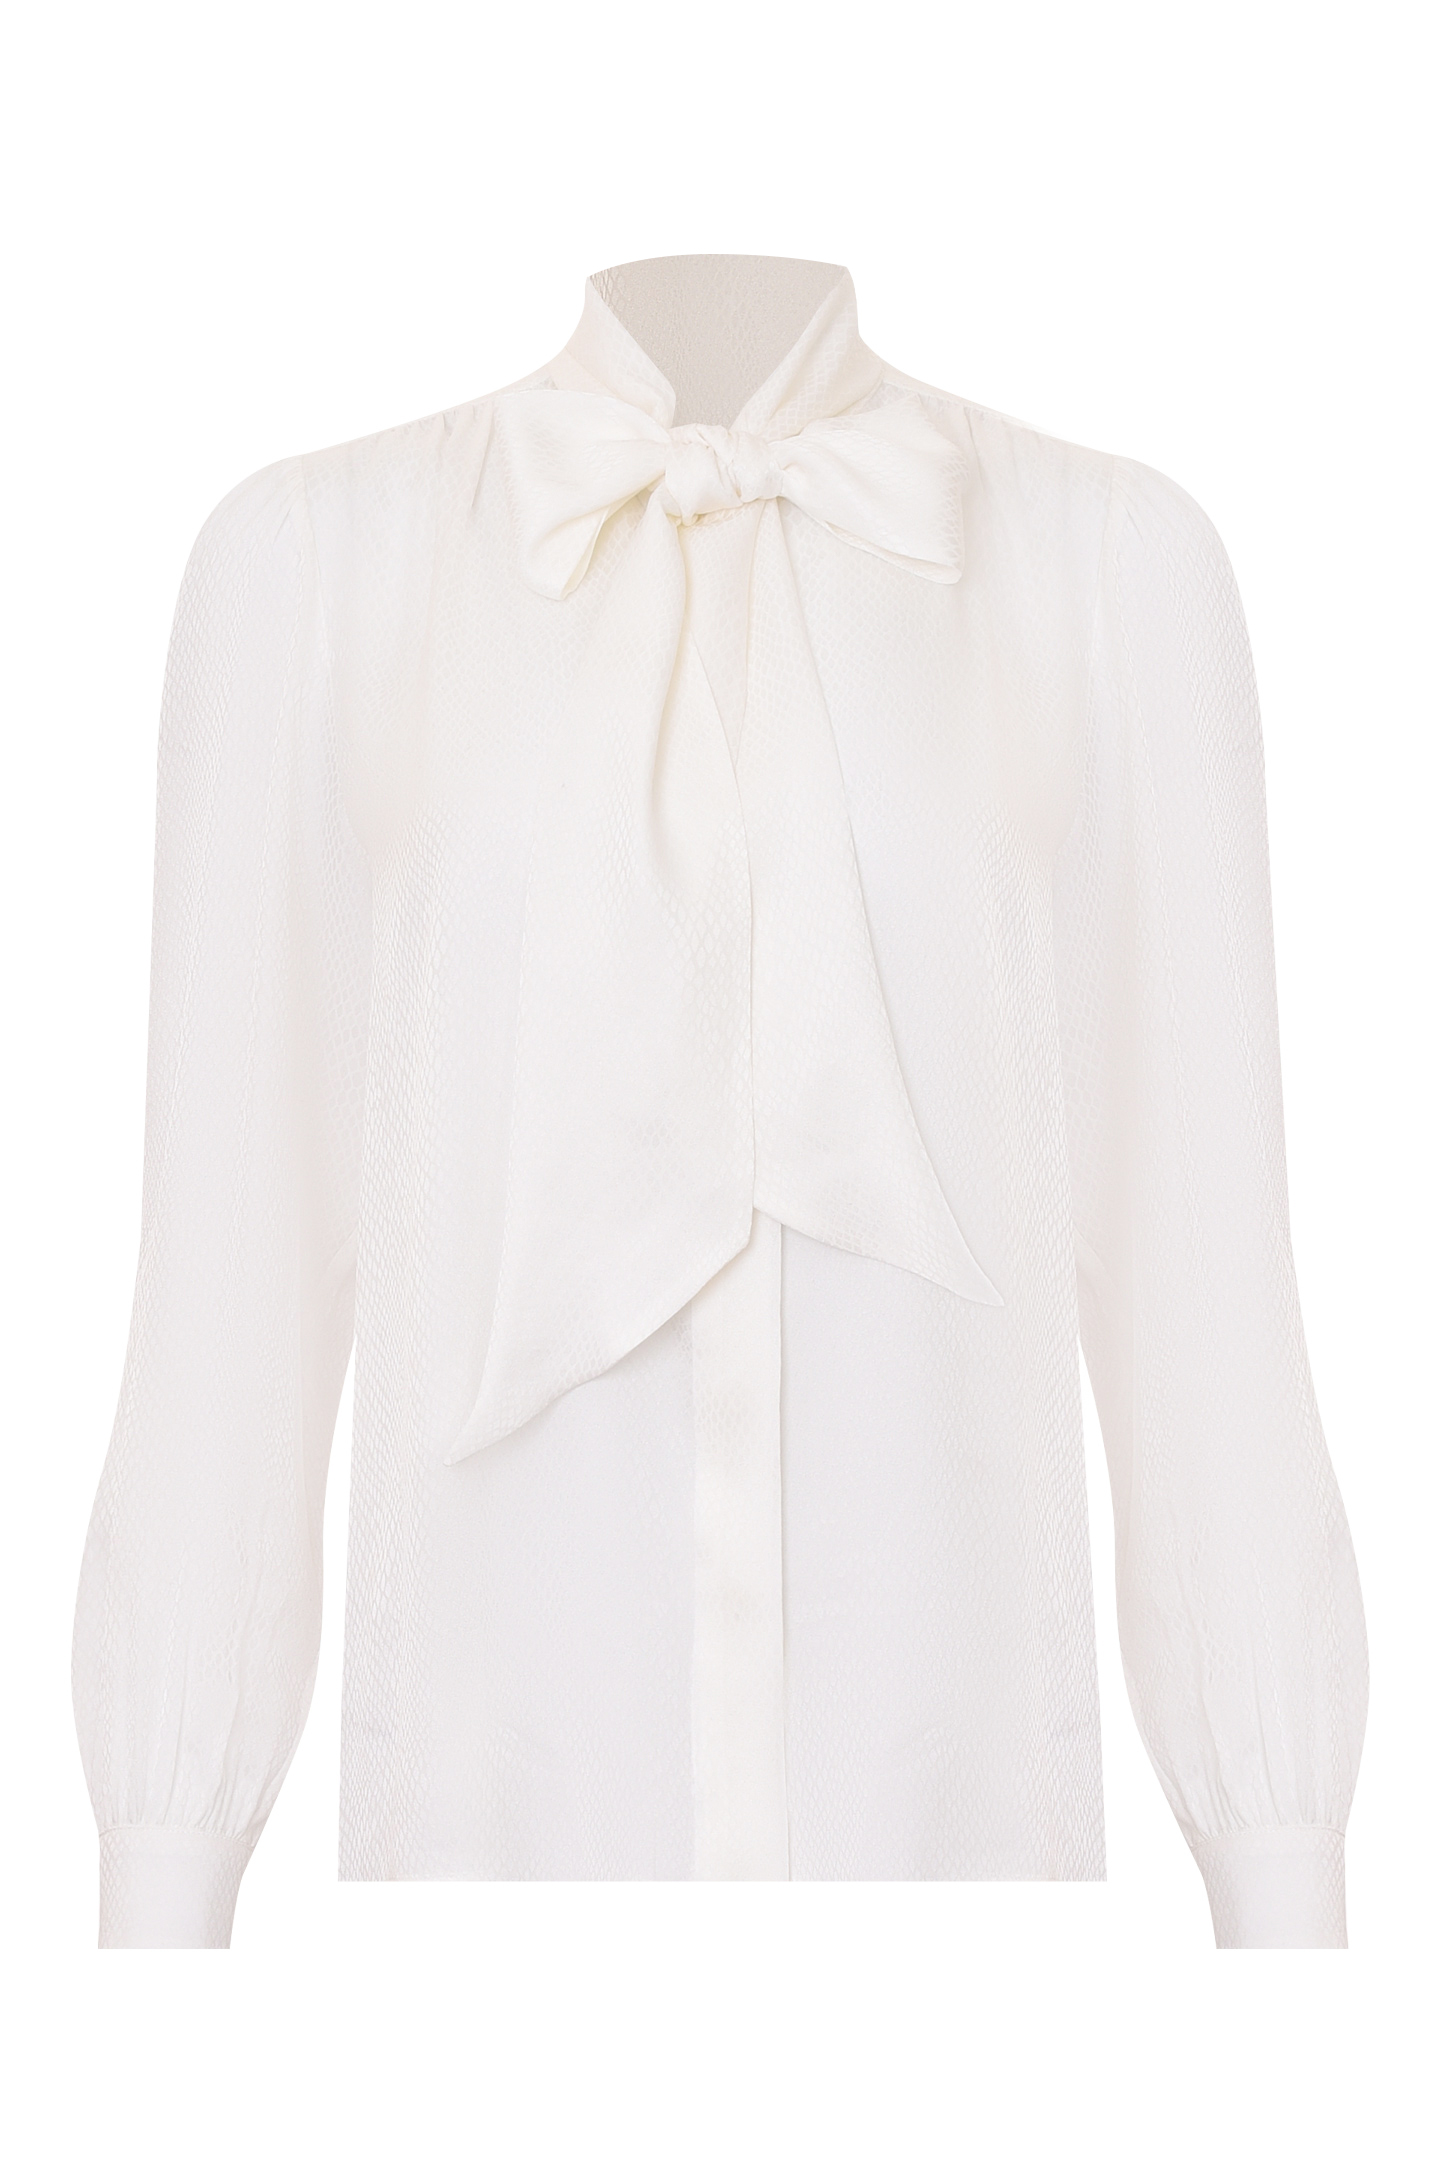 Блуза SAINT LAURENT 669023 Y6D34, цвет: Белый, Женский